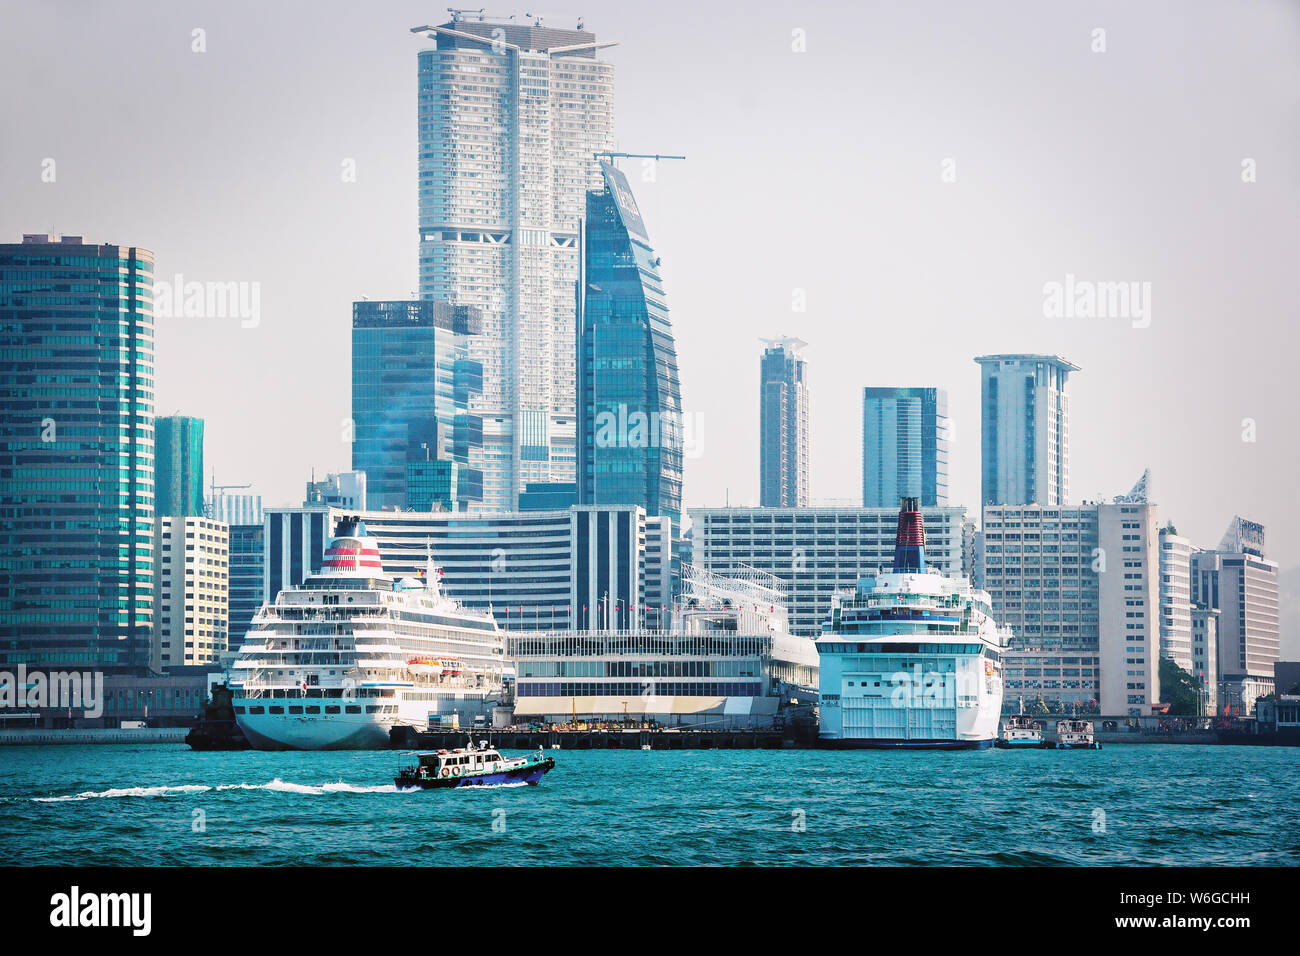 La ville moderne de Hong Kong. Les paquebots de croisière moderne et de passagers avec des gratte-ciel de Hong Kong dans l'arrière-plan. Paysage urbain d'Hong Kong Banque D'Images